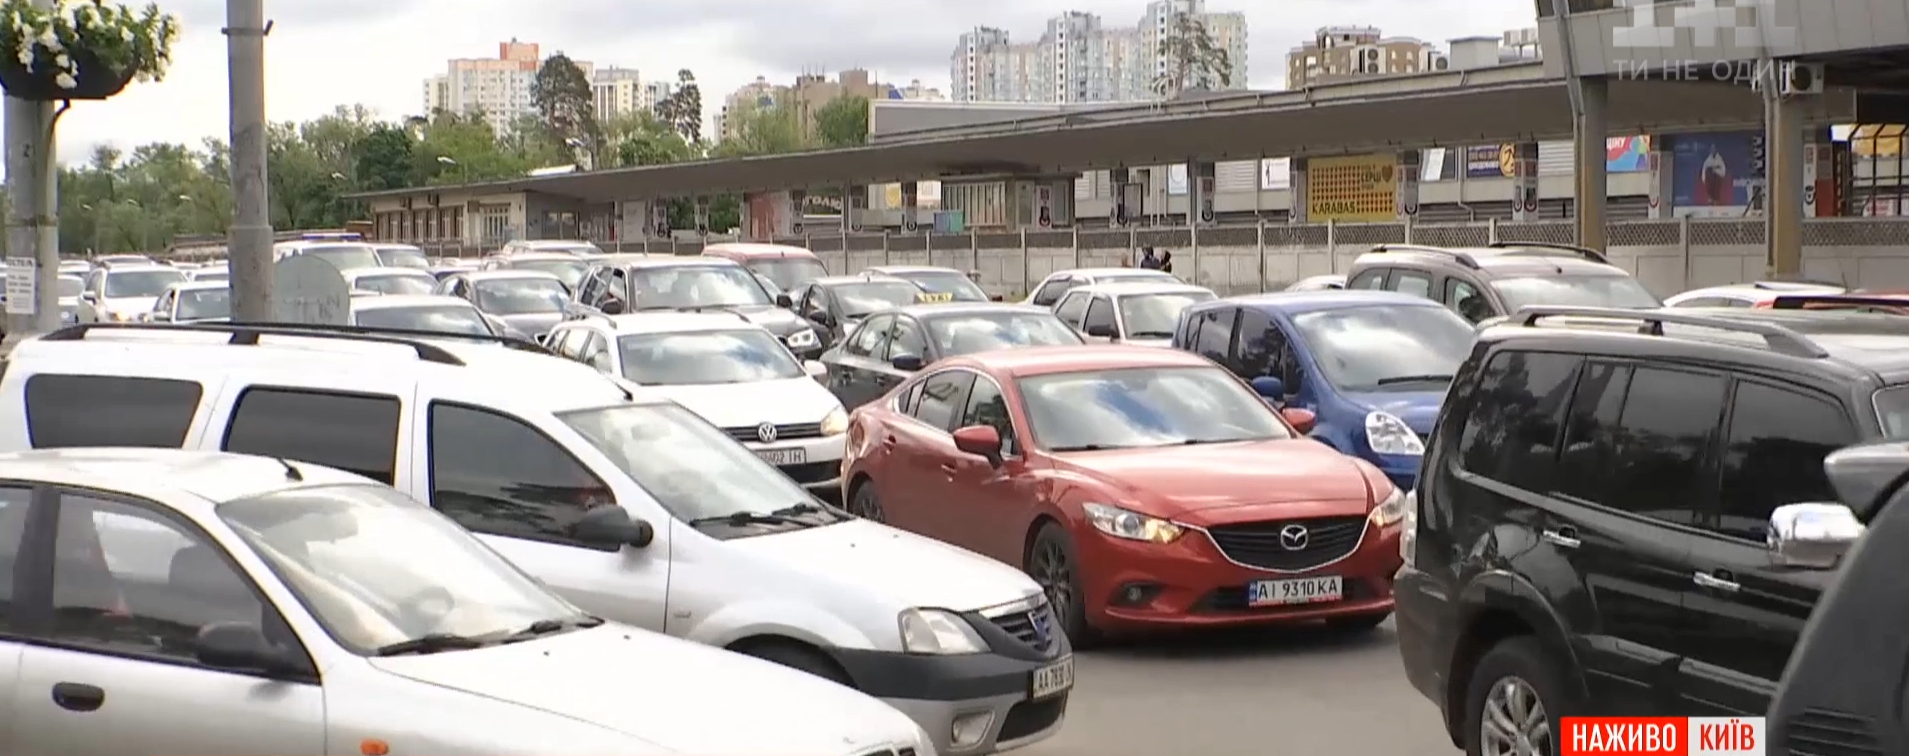 Транспортный коллапс в столице: ослабят ли карантин в Киеве